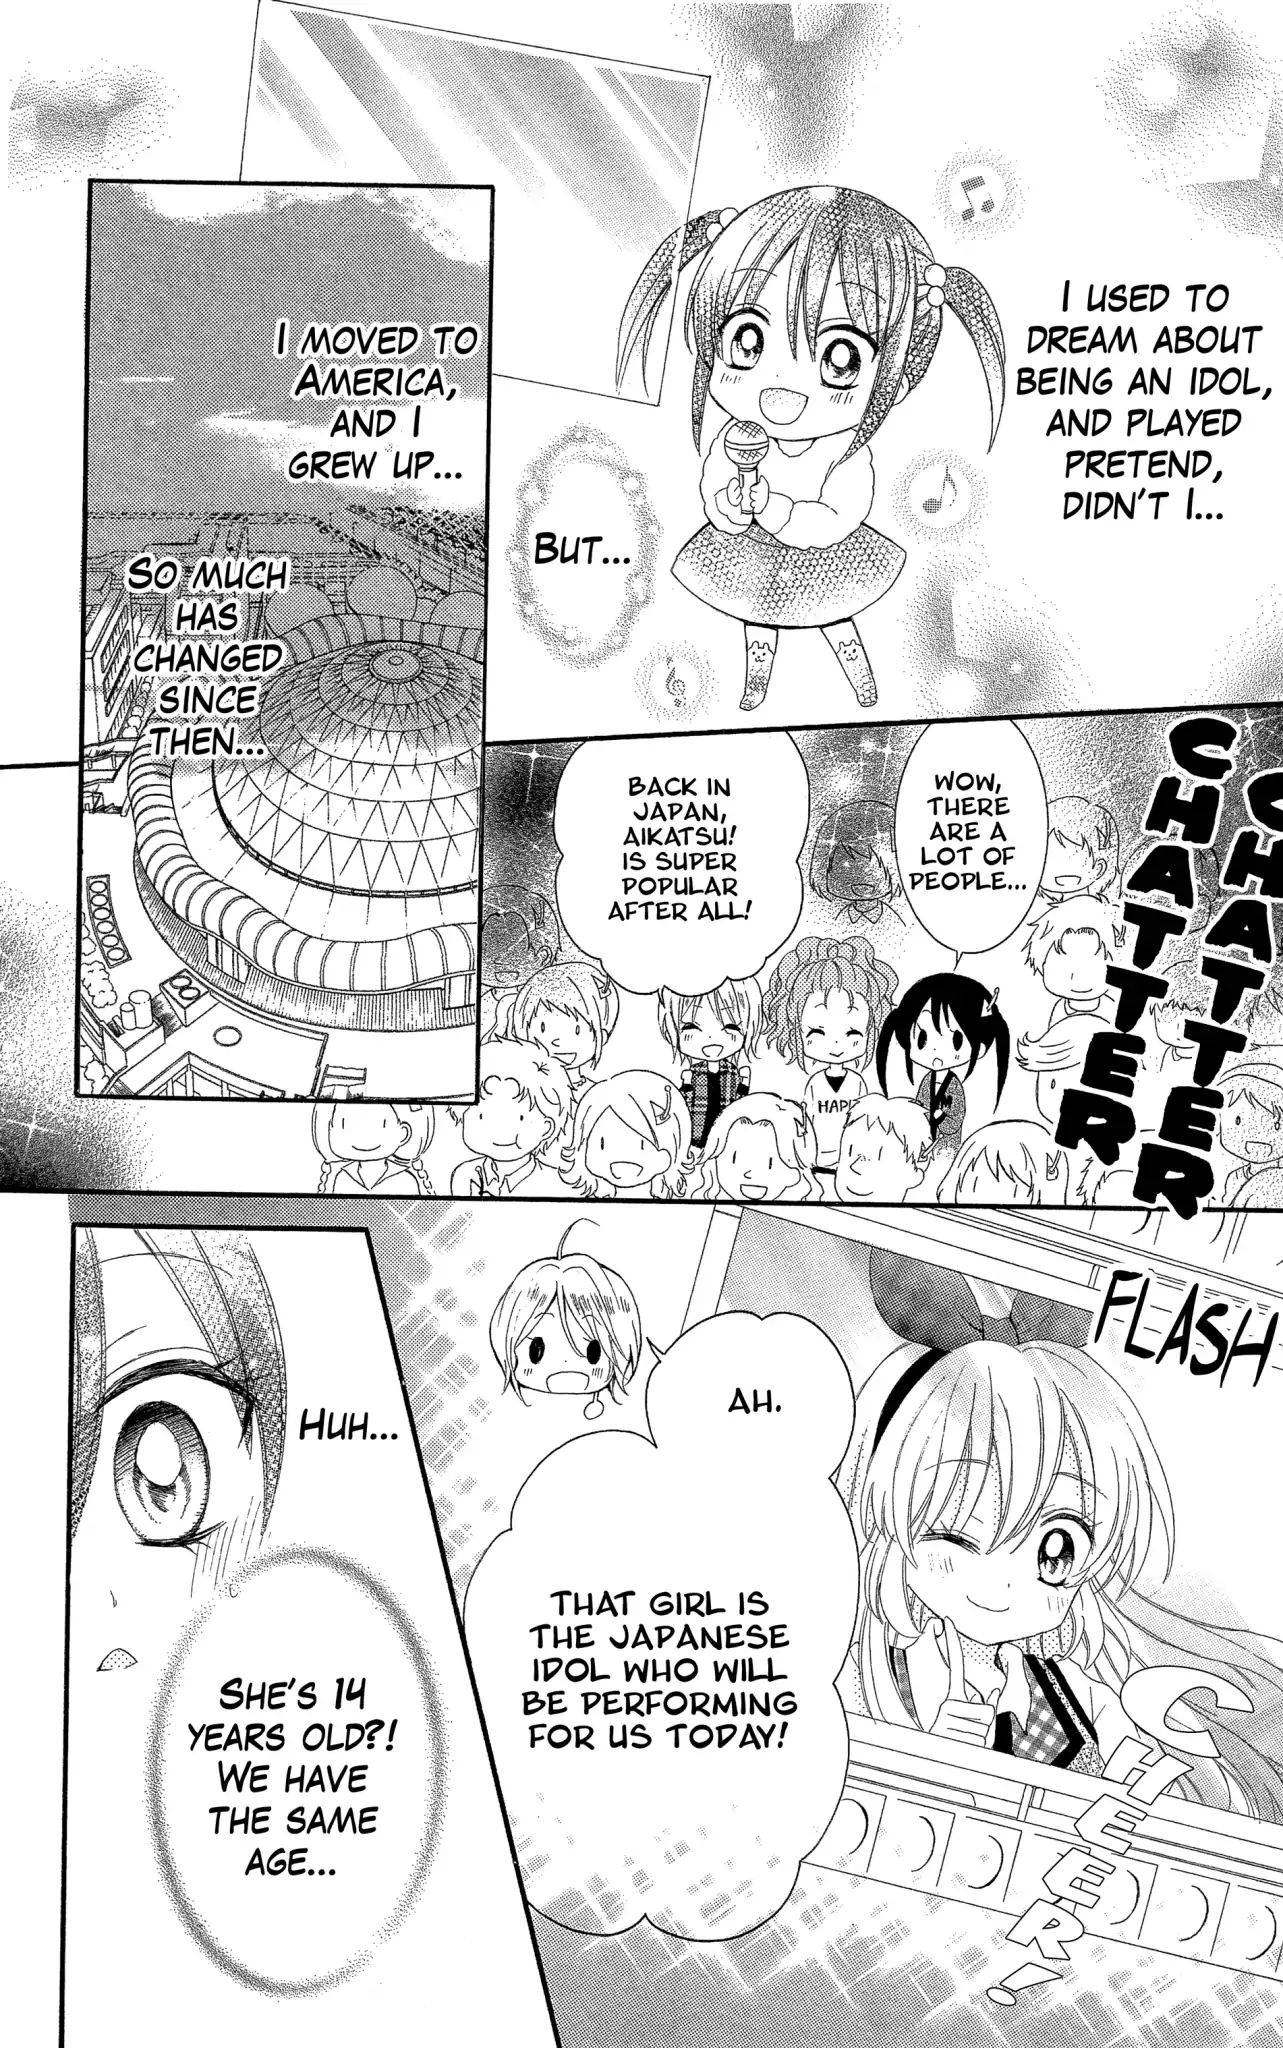 Aikatsu! Secret Story Vol.1 Chapter 1